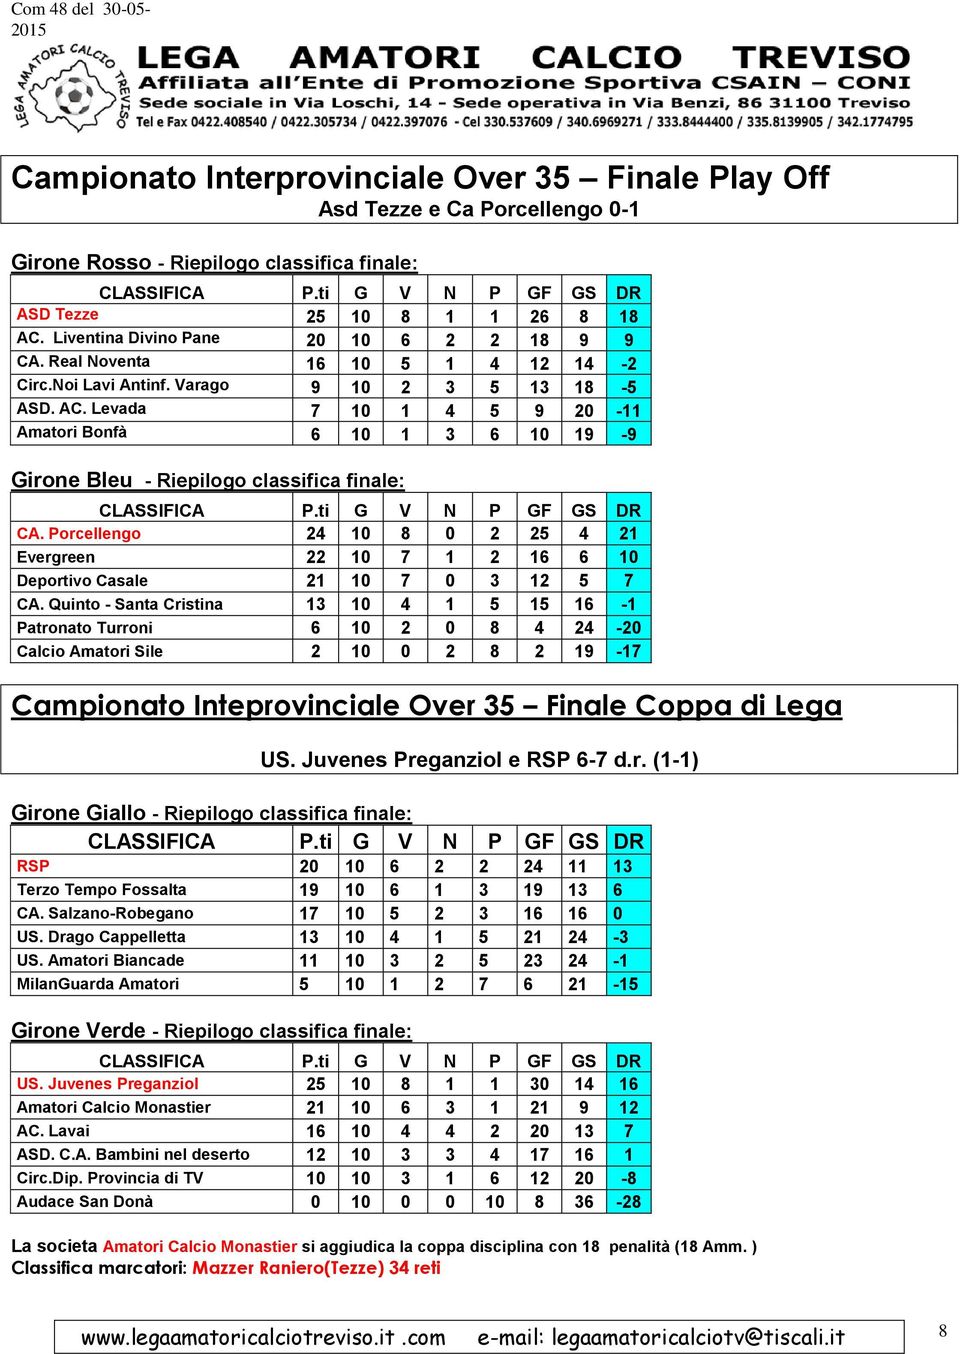 Levada 7 10 1 4 5 9 20-11 Amatori Bonfà 6 10 1 3 6 10 19-9 Girone Bleu - Riepilogo classifica finale: CA.